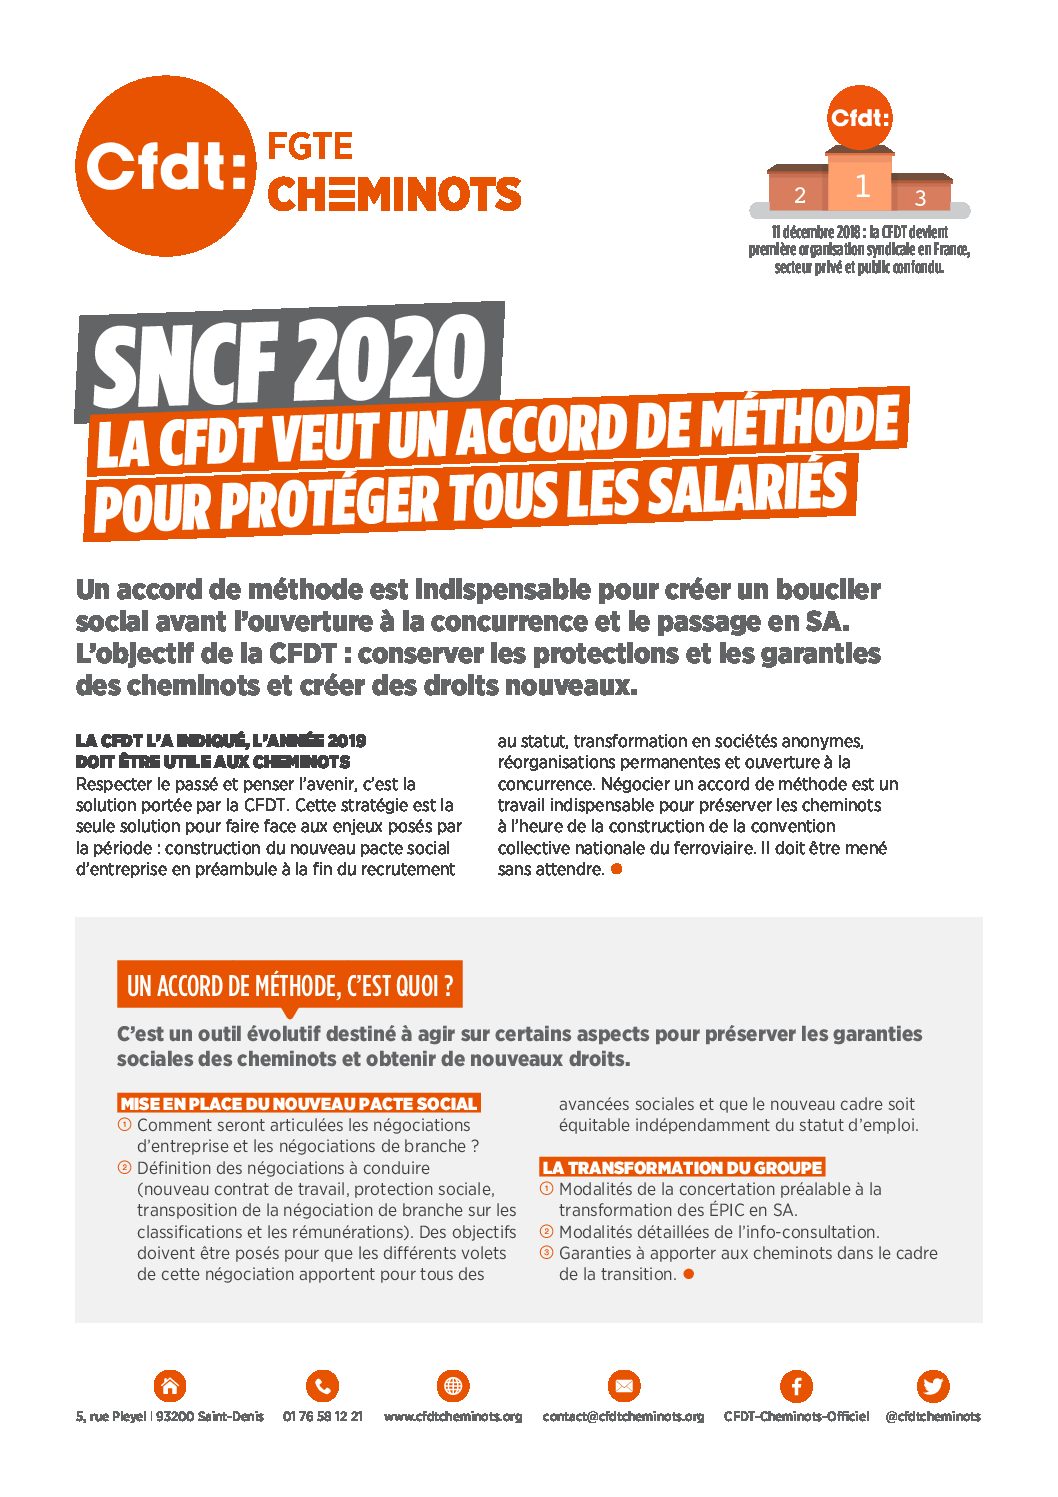 SNCF 2020